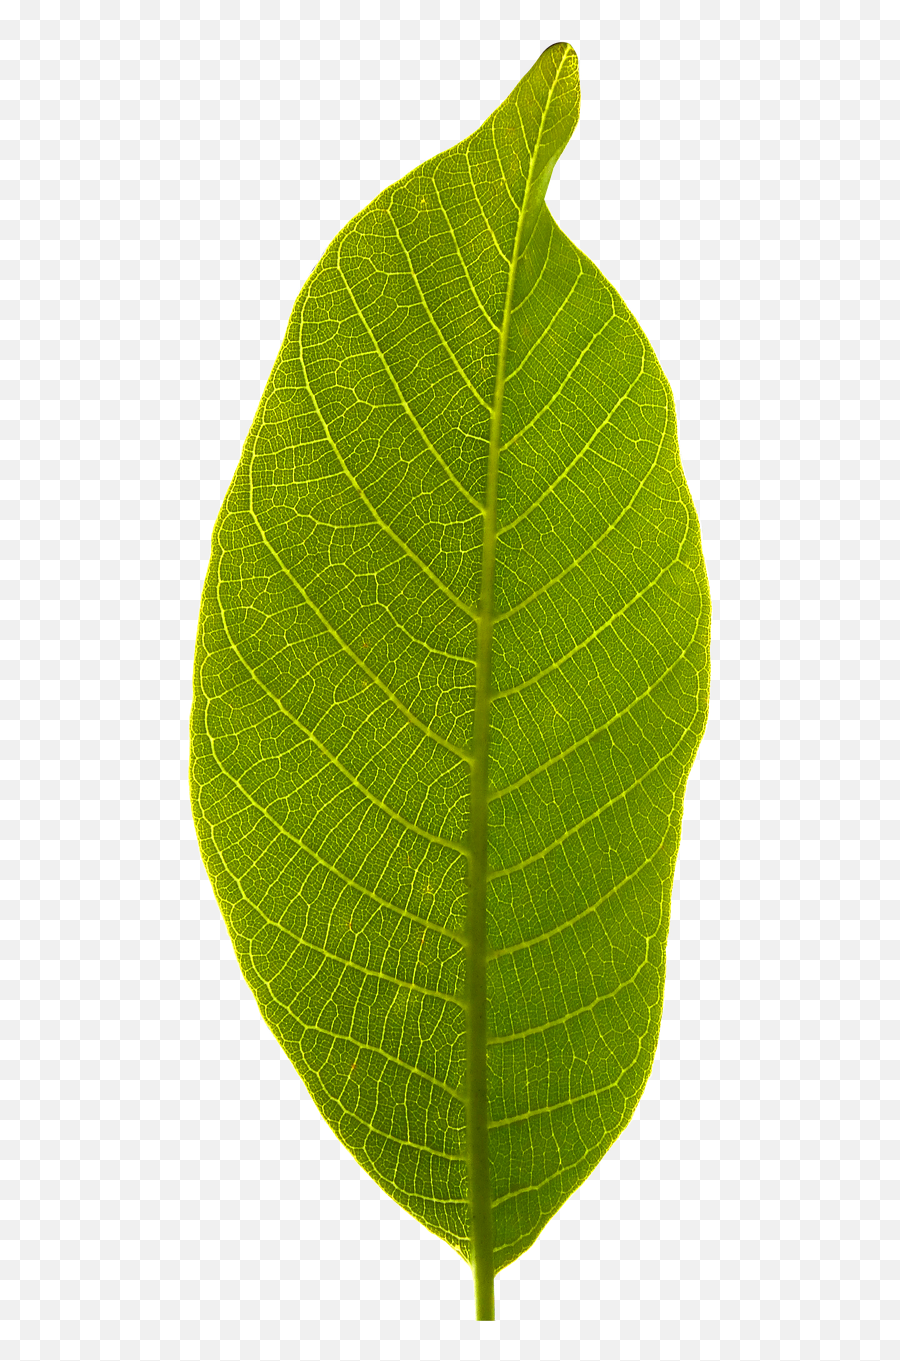 Leaf Transparent Background - Leaf Transparent Background Emoji,Leaf Transparent